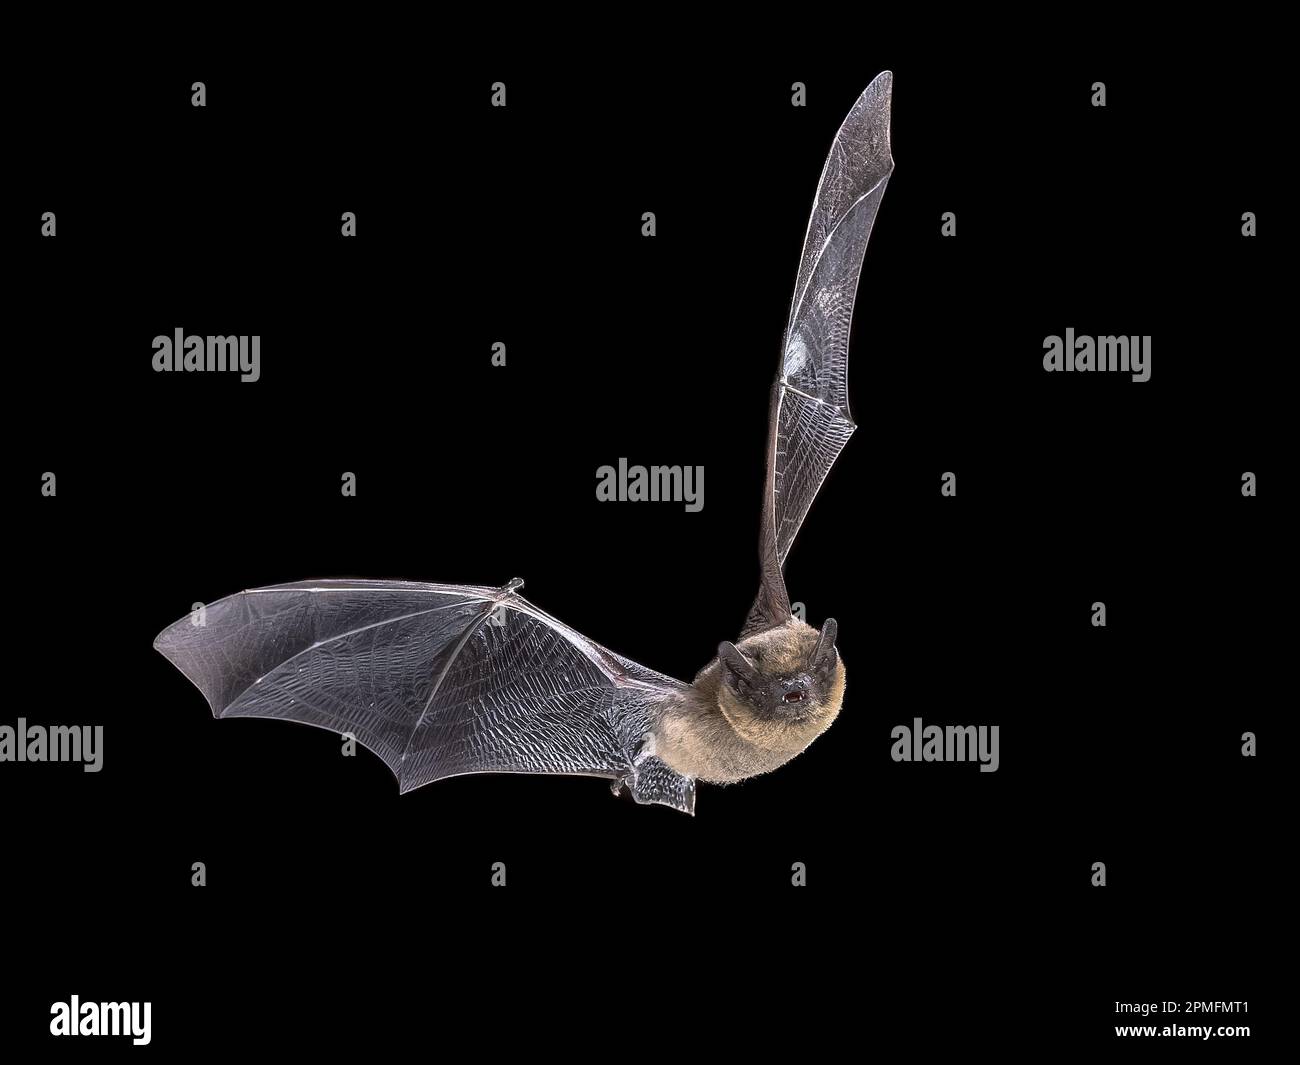 Flying Common Pipistrelle bat Black Background (Pipistrellus pipistrellus) ist ein kleiner Pipistrelle Microbat, dessen sehr großer Bereich sich über die meisten Bereiche erstreckt Stockfoto